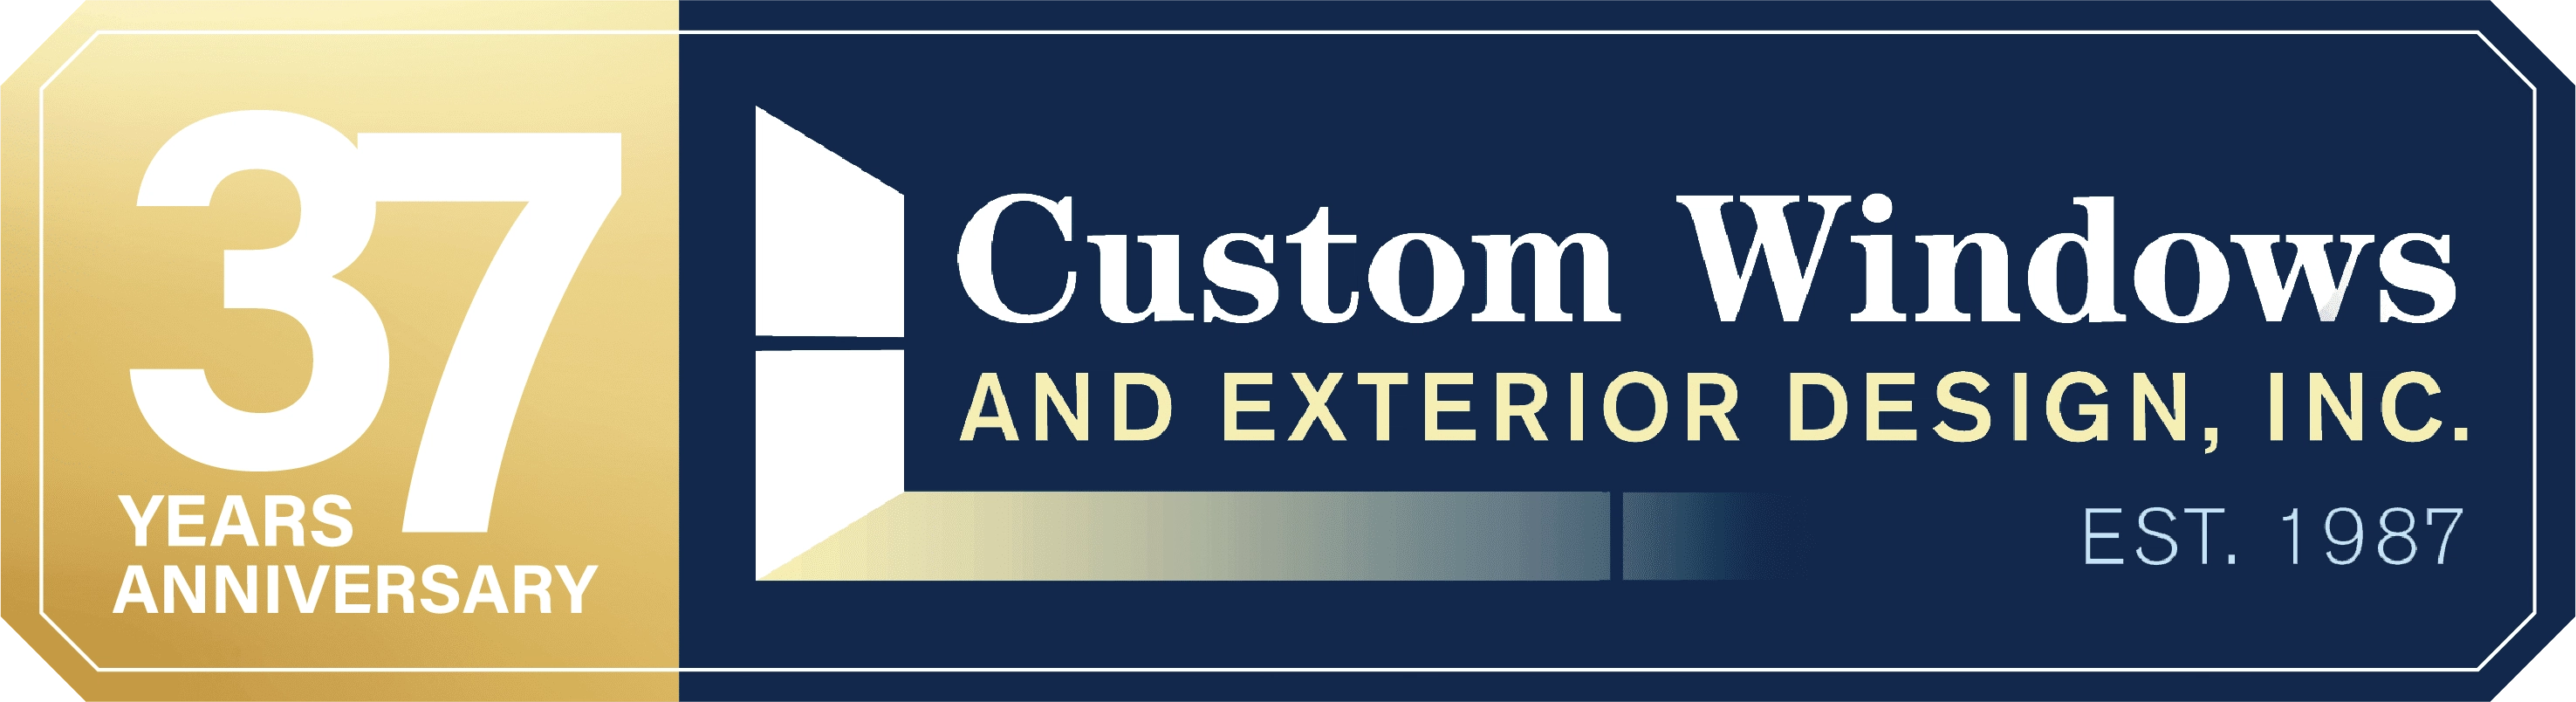 Custom Windows & Exterior Design, Inc Logo